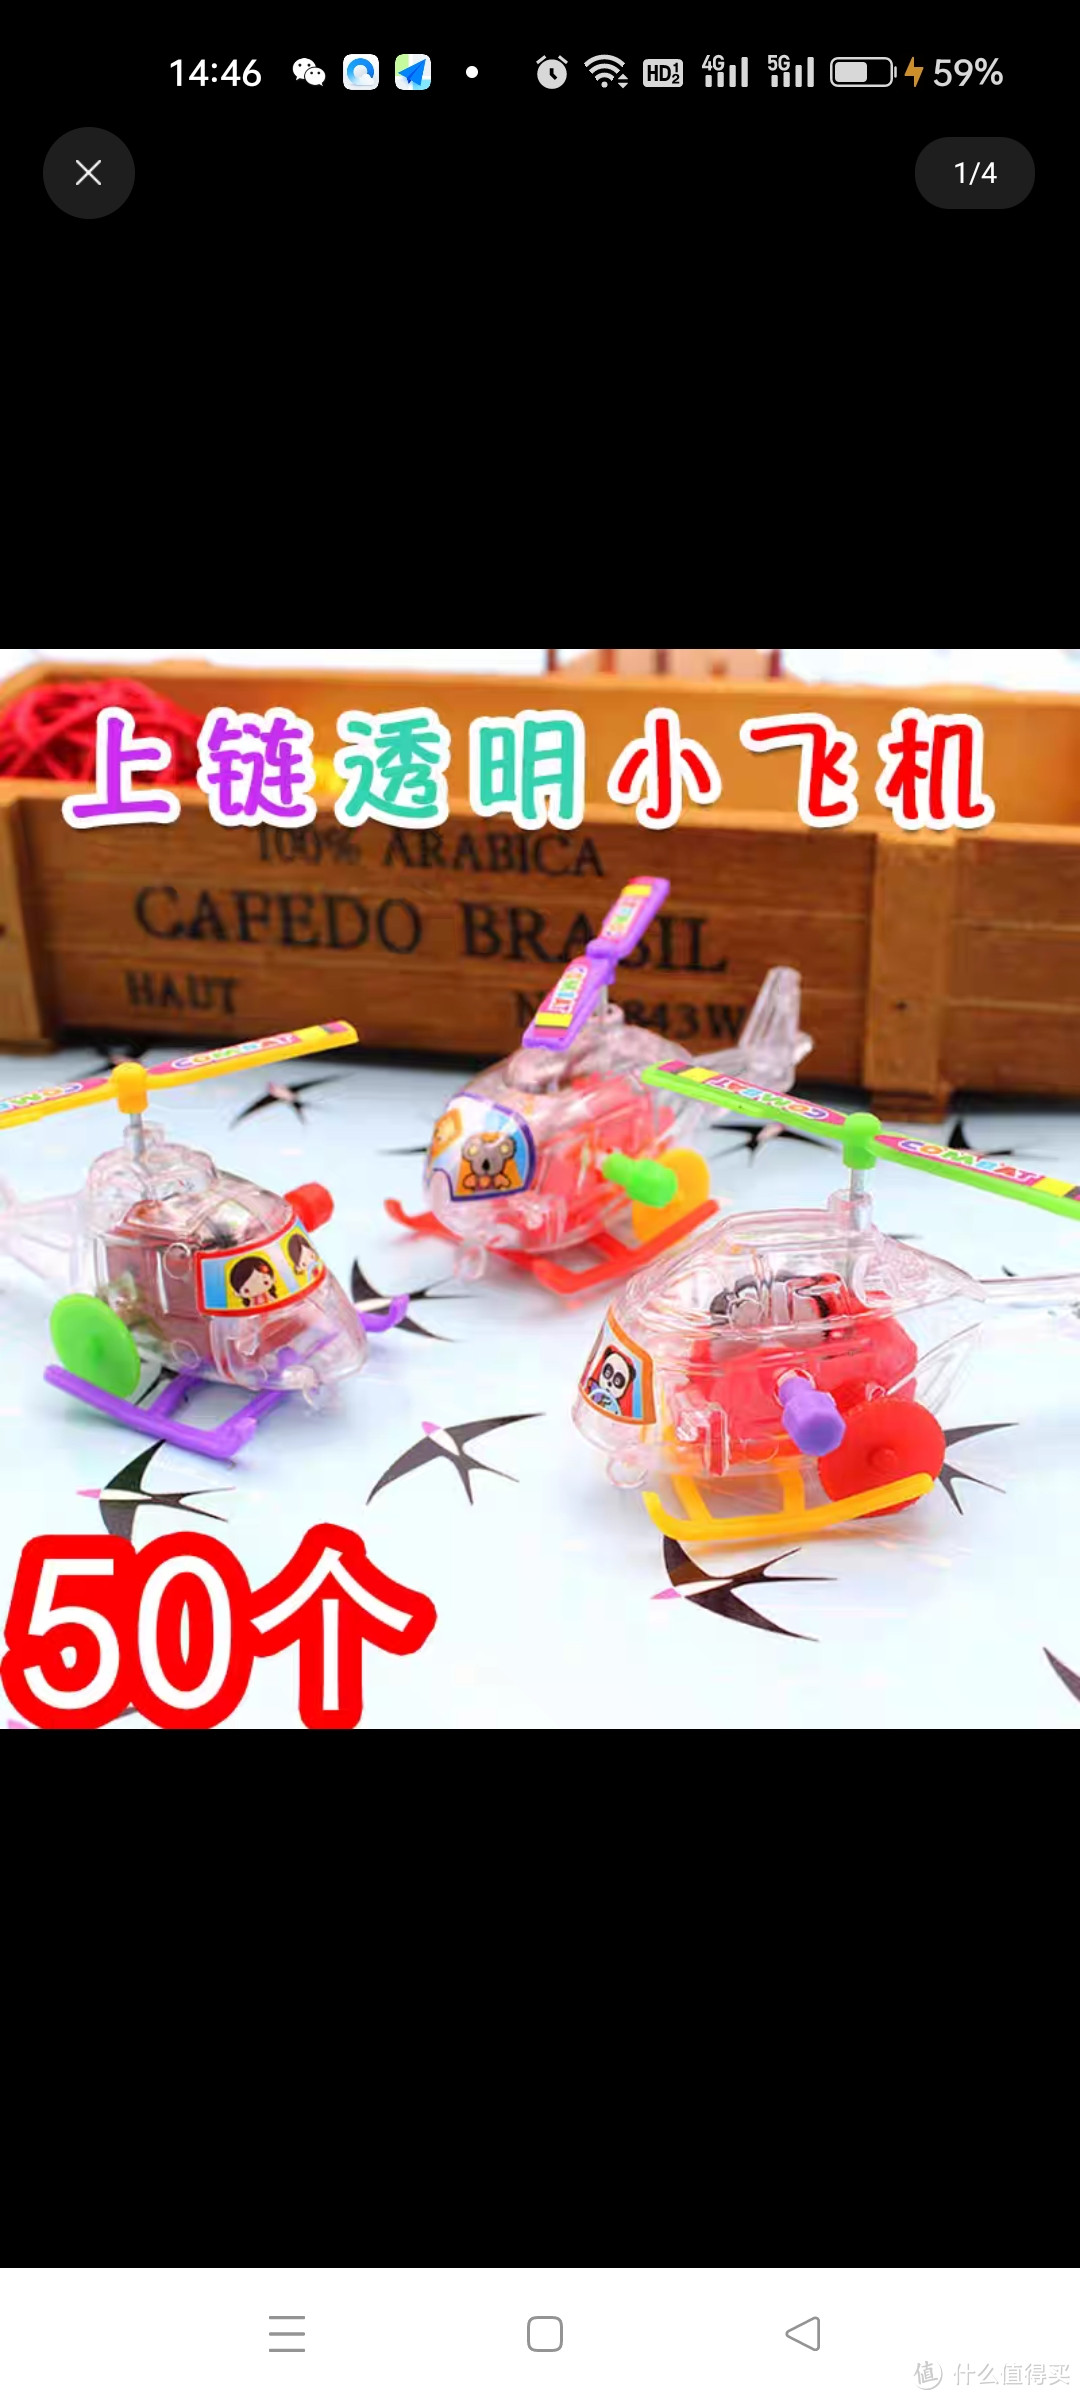 上链发条透明小飞机迷你益智飞机玩具儿童幼儿园发条小玩具礼品